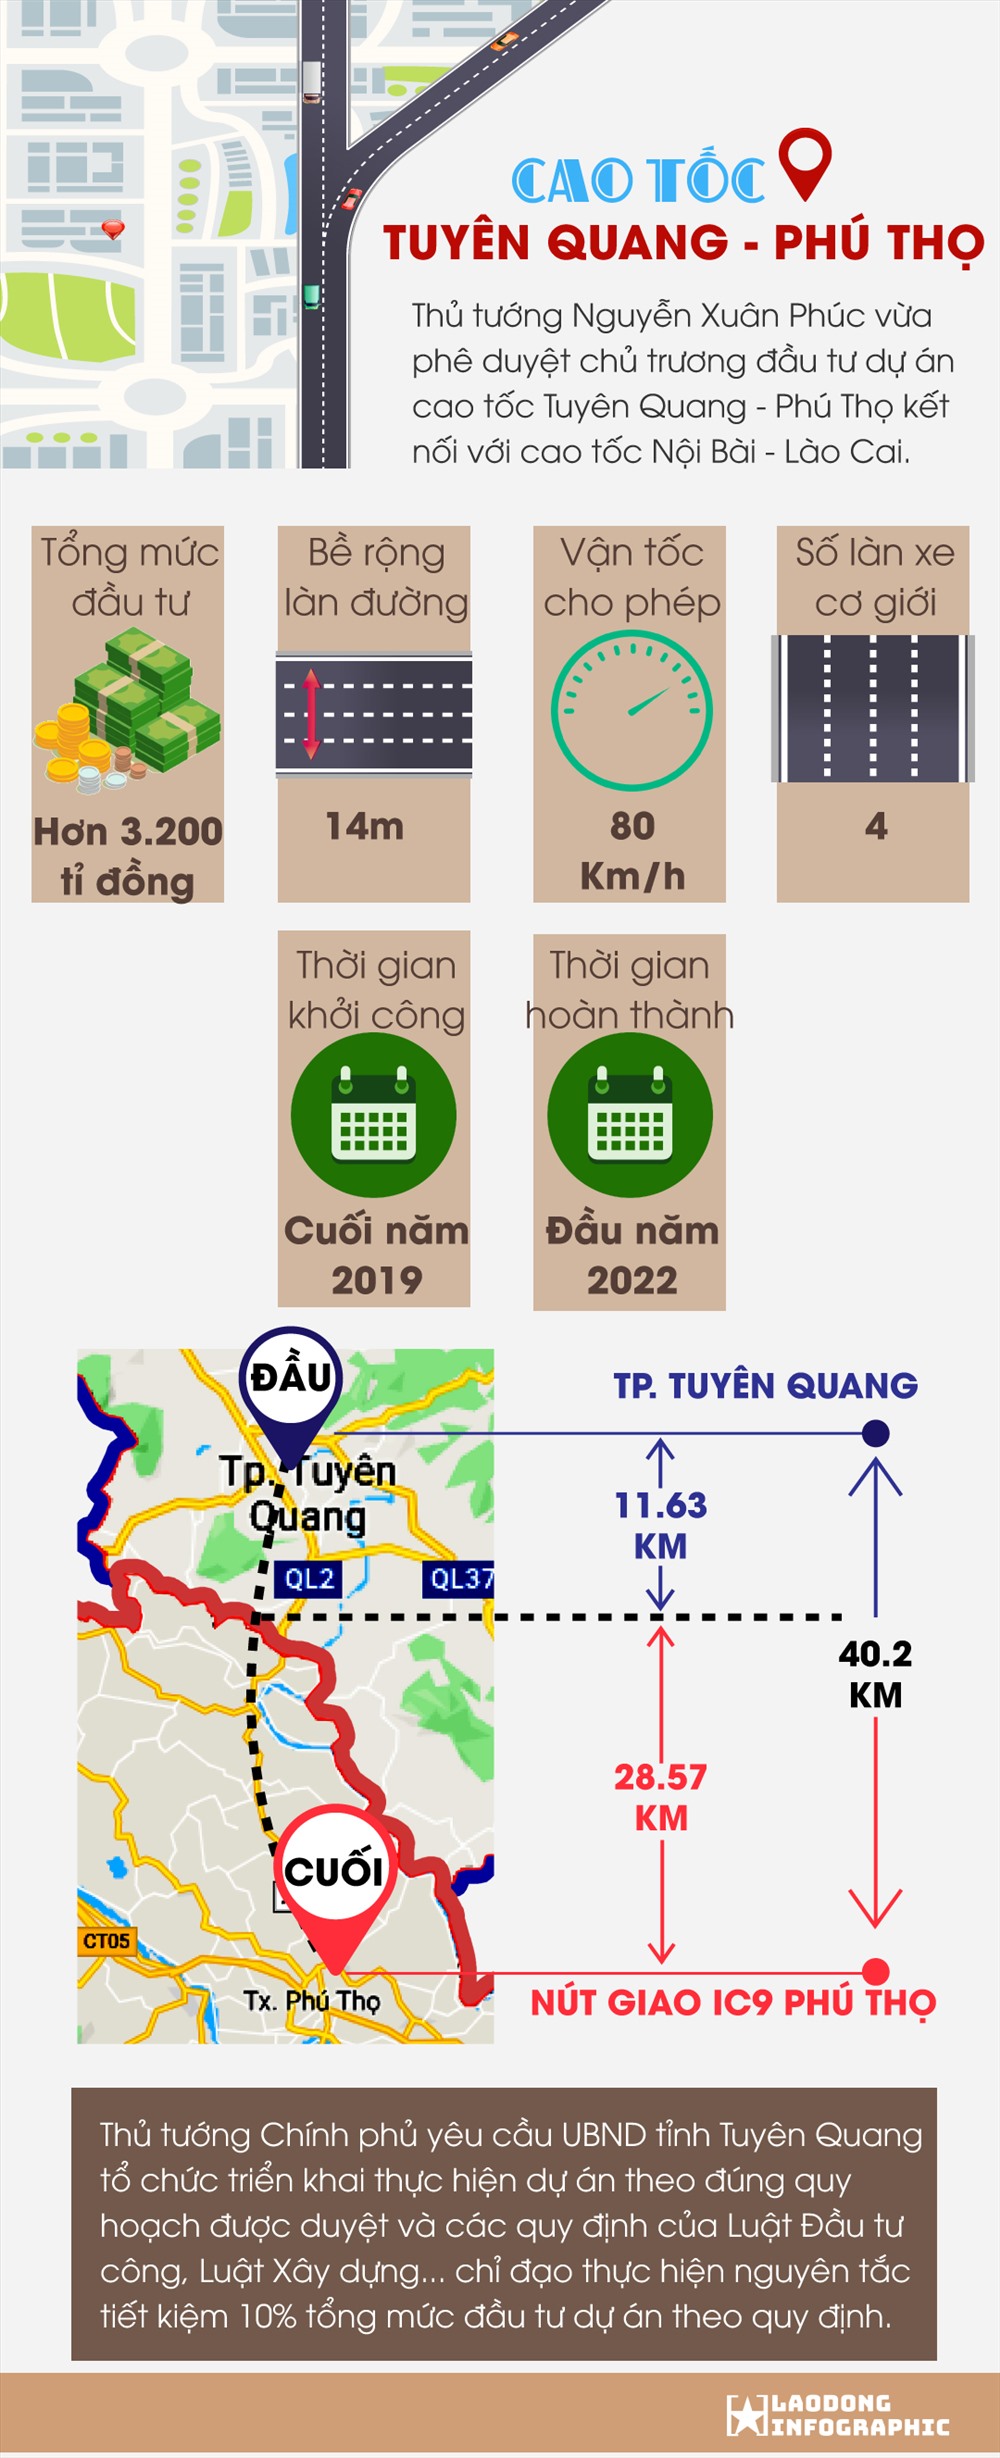 Với sự đầu tư từ các tổ chức tài chính lớn, dự án xây dựng đường cao tốc Tuyên Quang - Phú Thọ đã được thực hiện vào năm